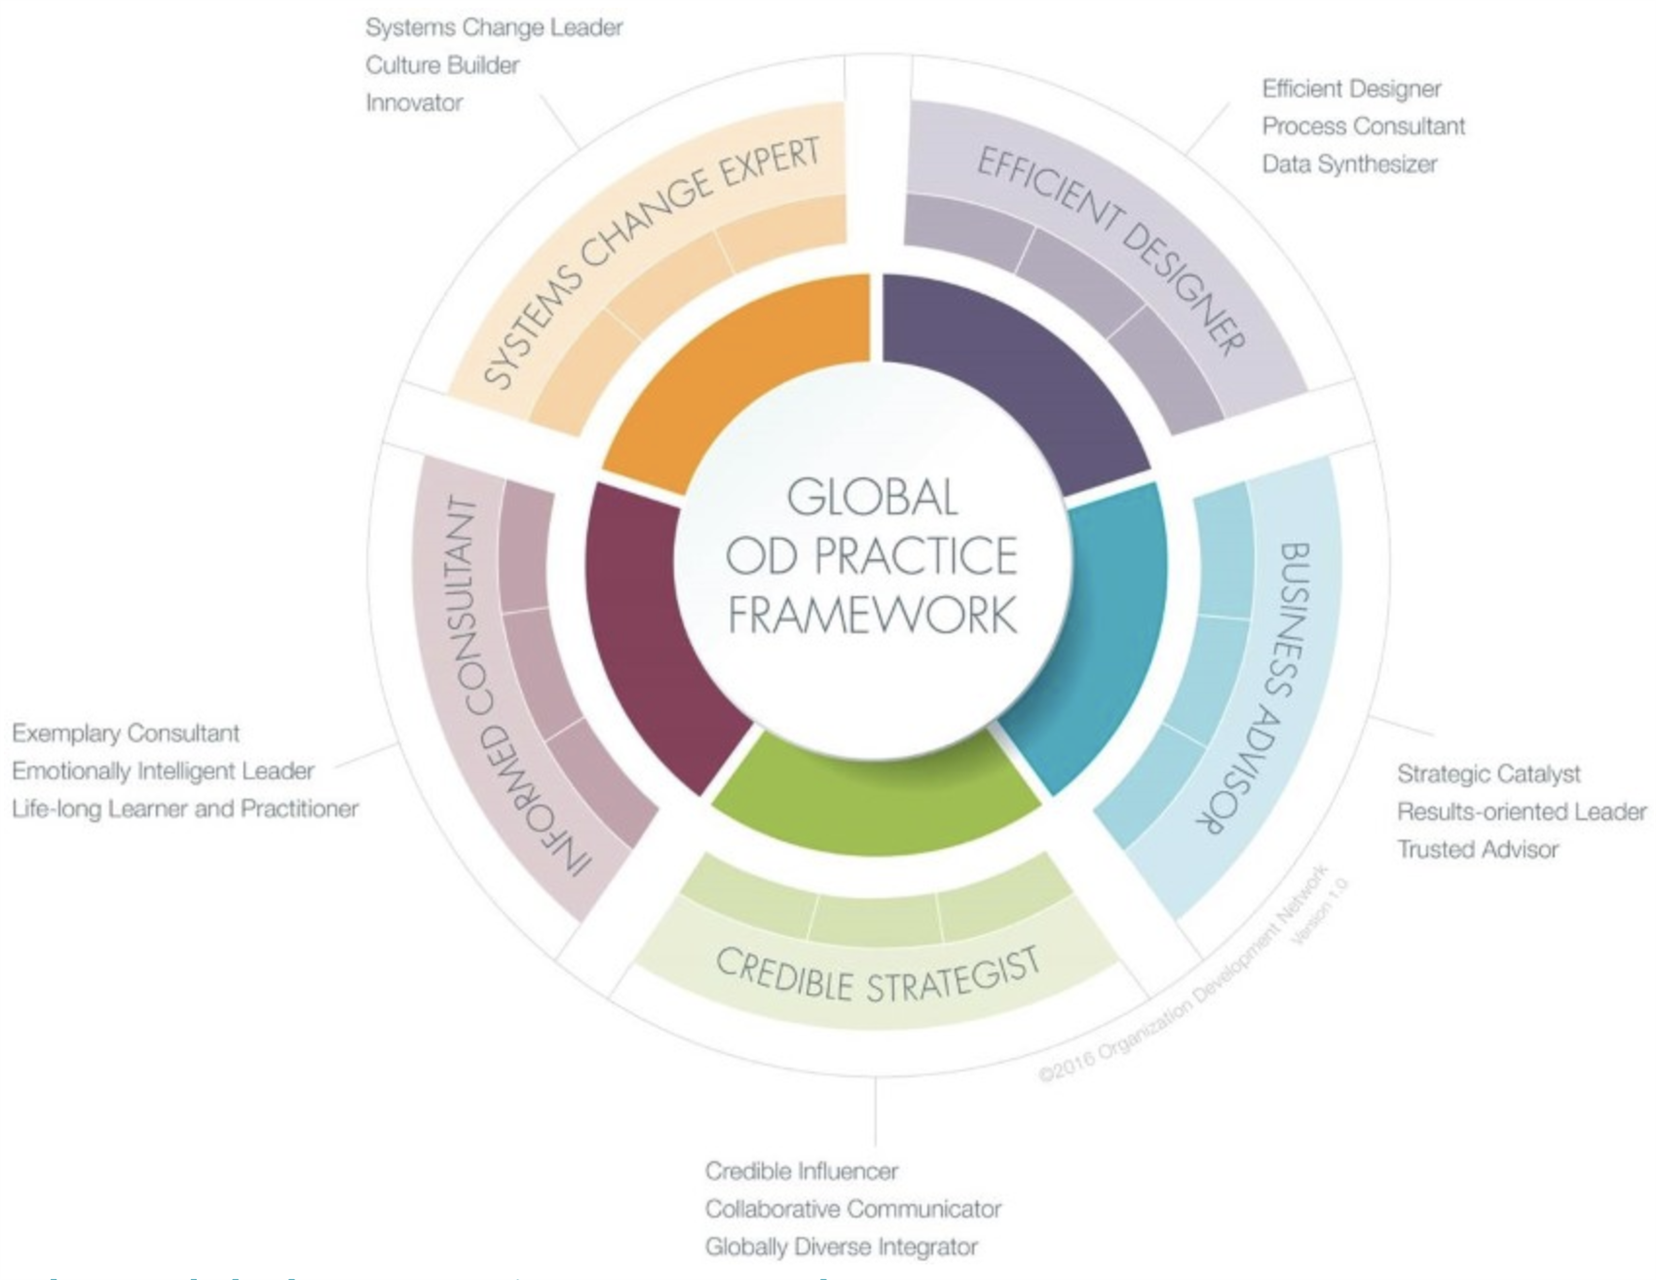 Global OD Practice Framework Image